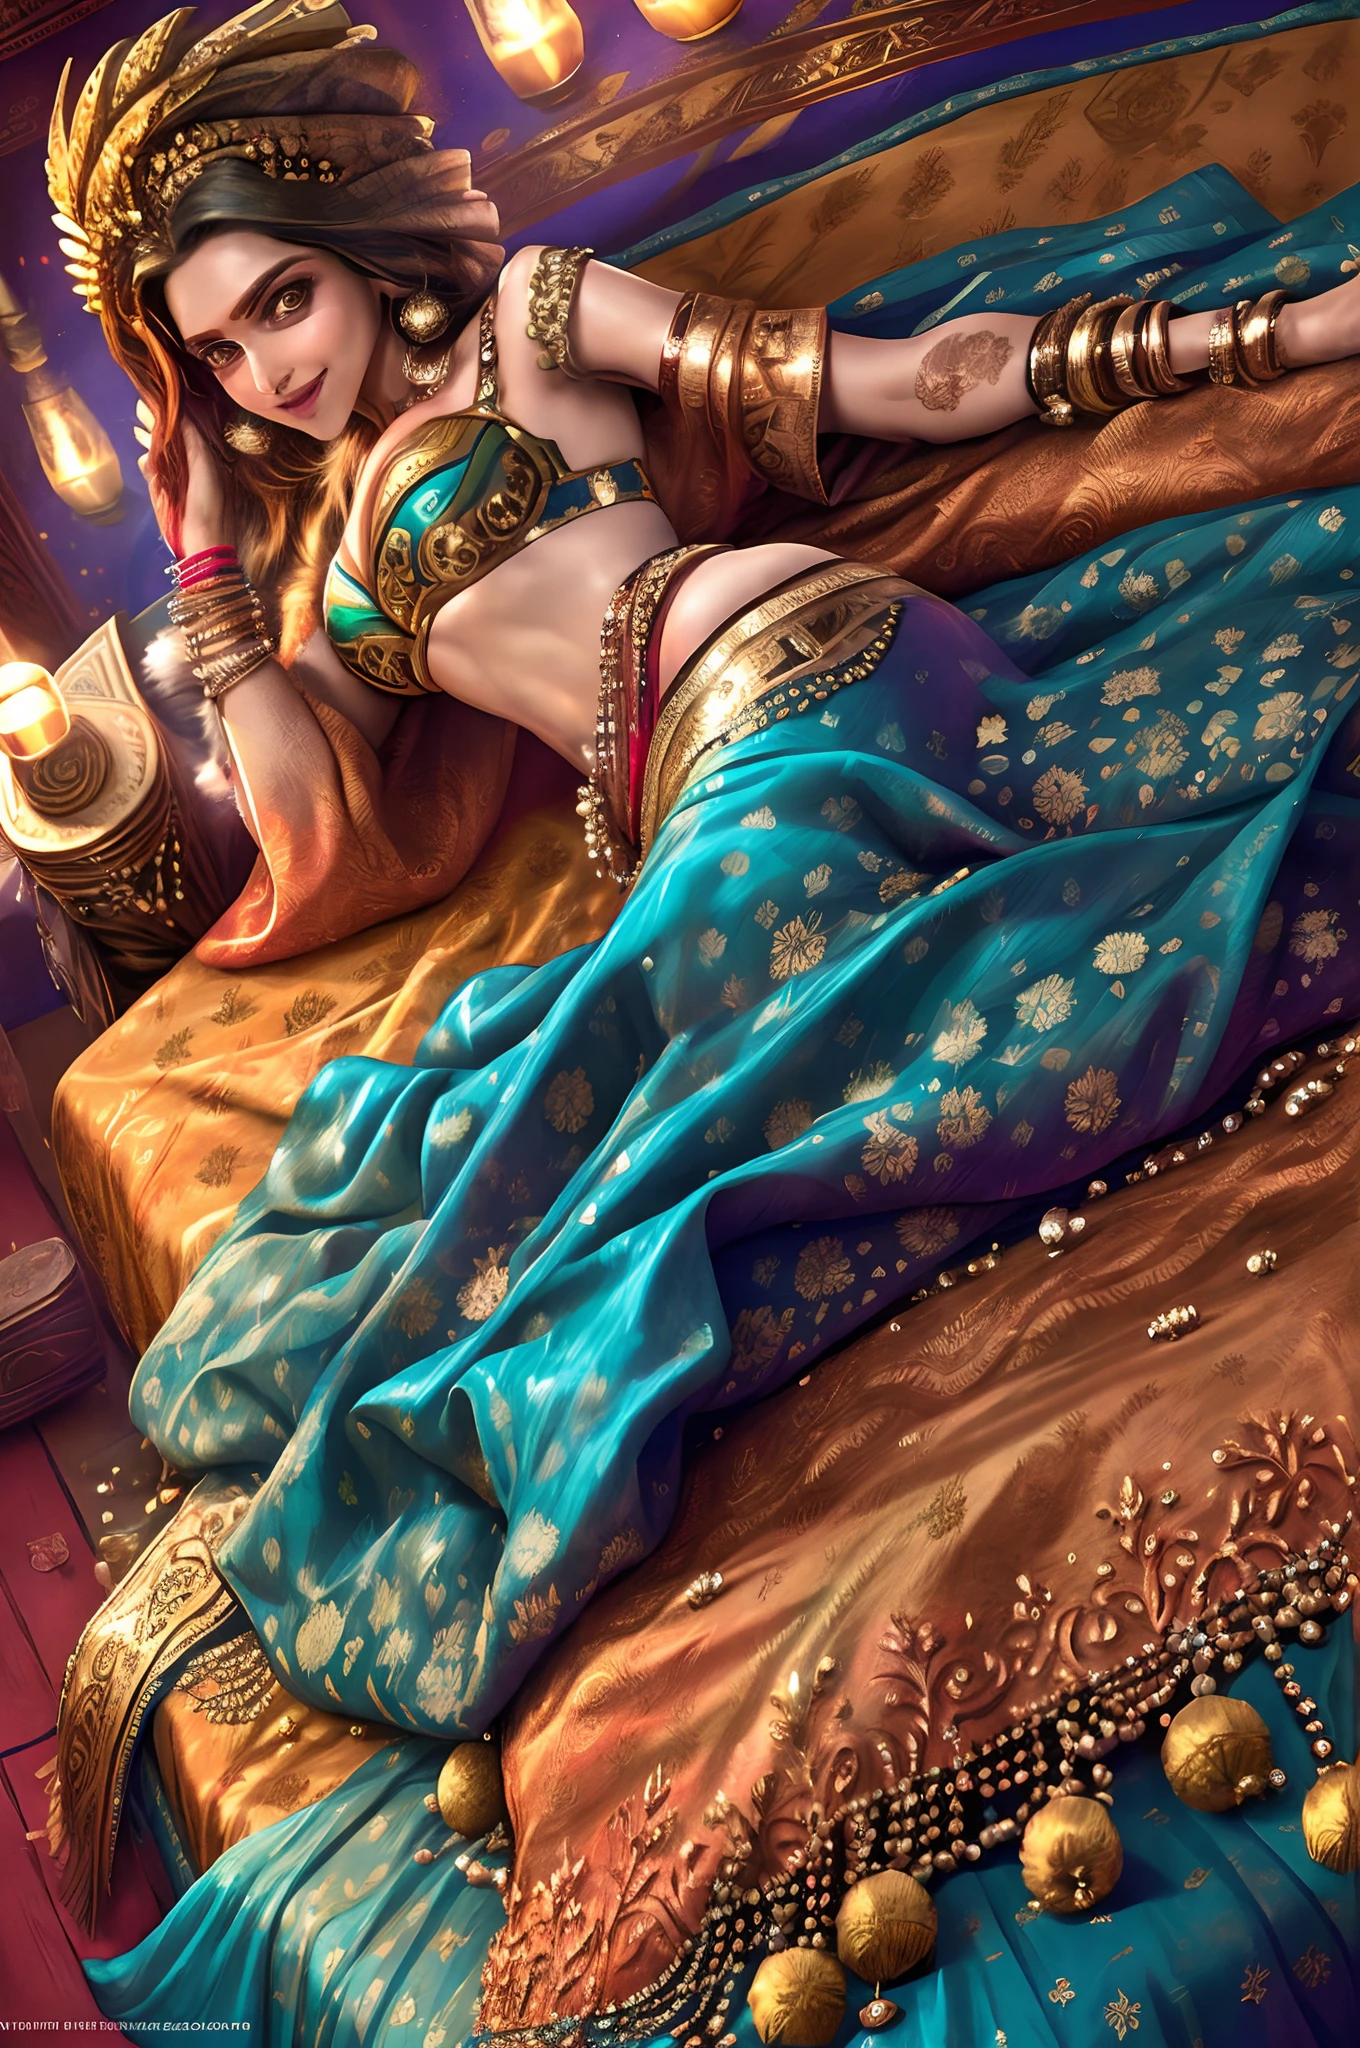 الممثلة الهندية ديبيكا بادوكون ترتدي الساري النابض بالحياة وهي مستلقية على السرير بشكل مغر, يبتسم